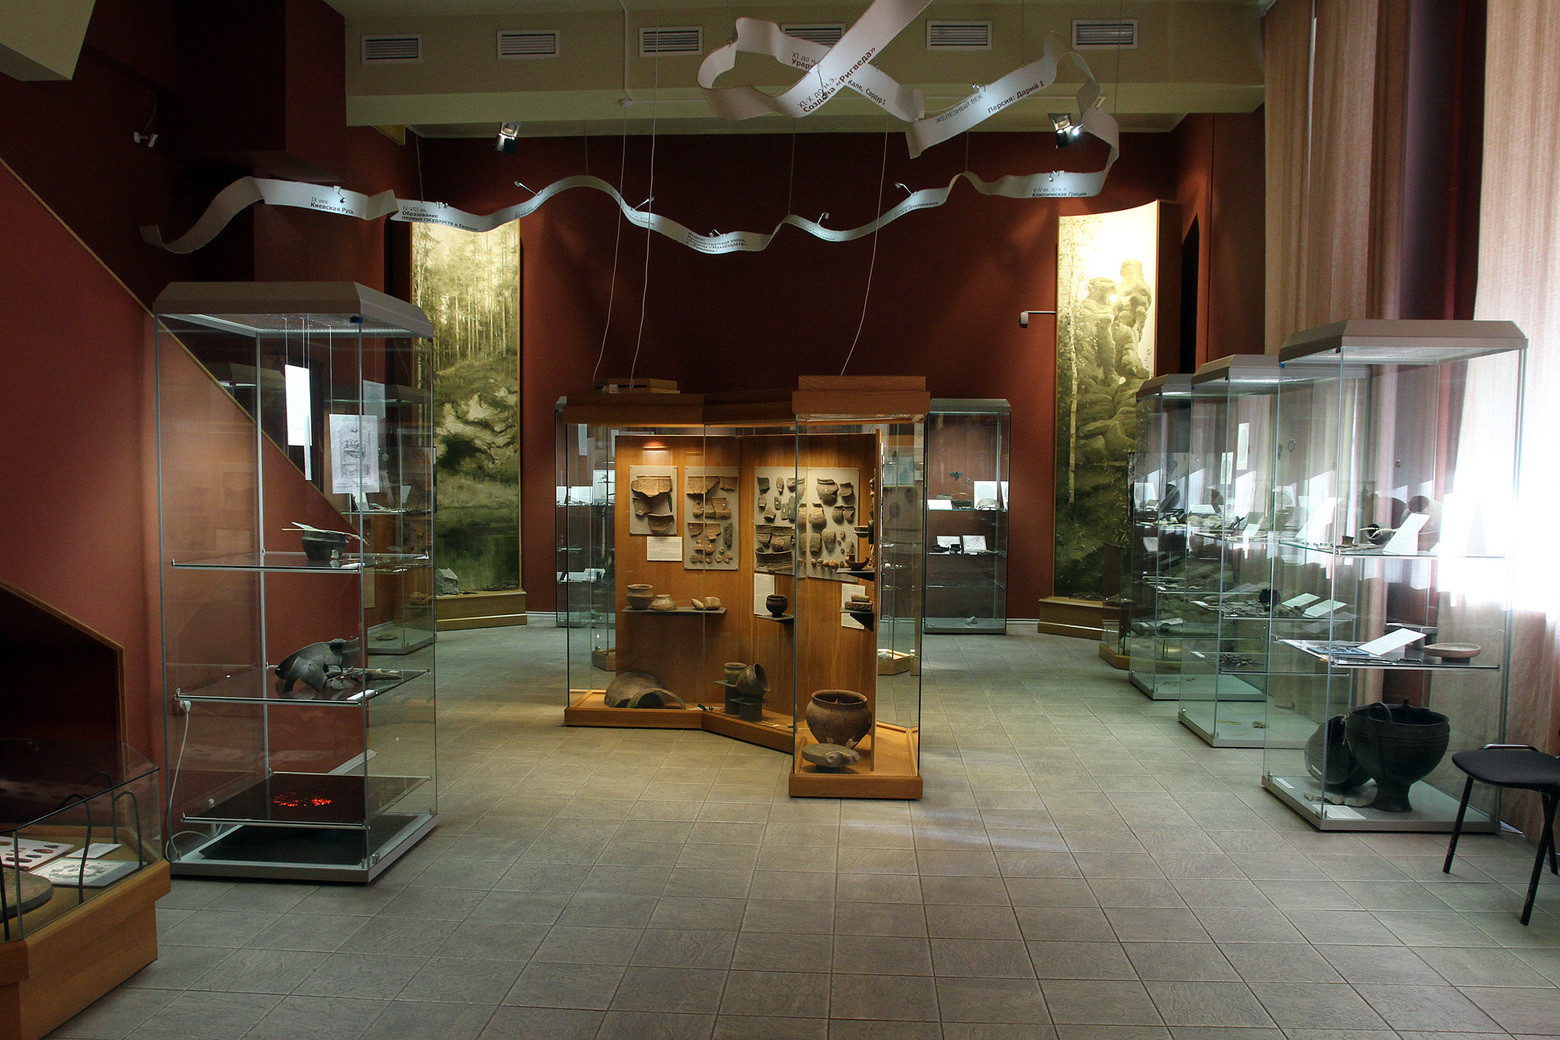 музей истории екатеринбурга